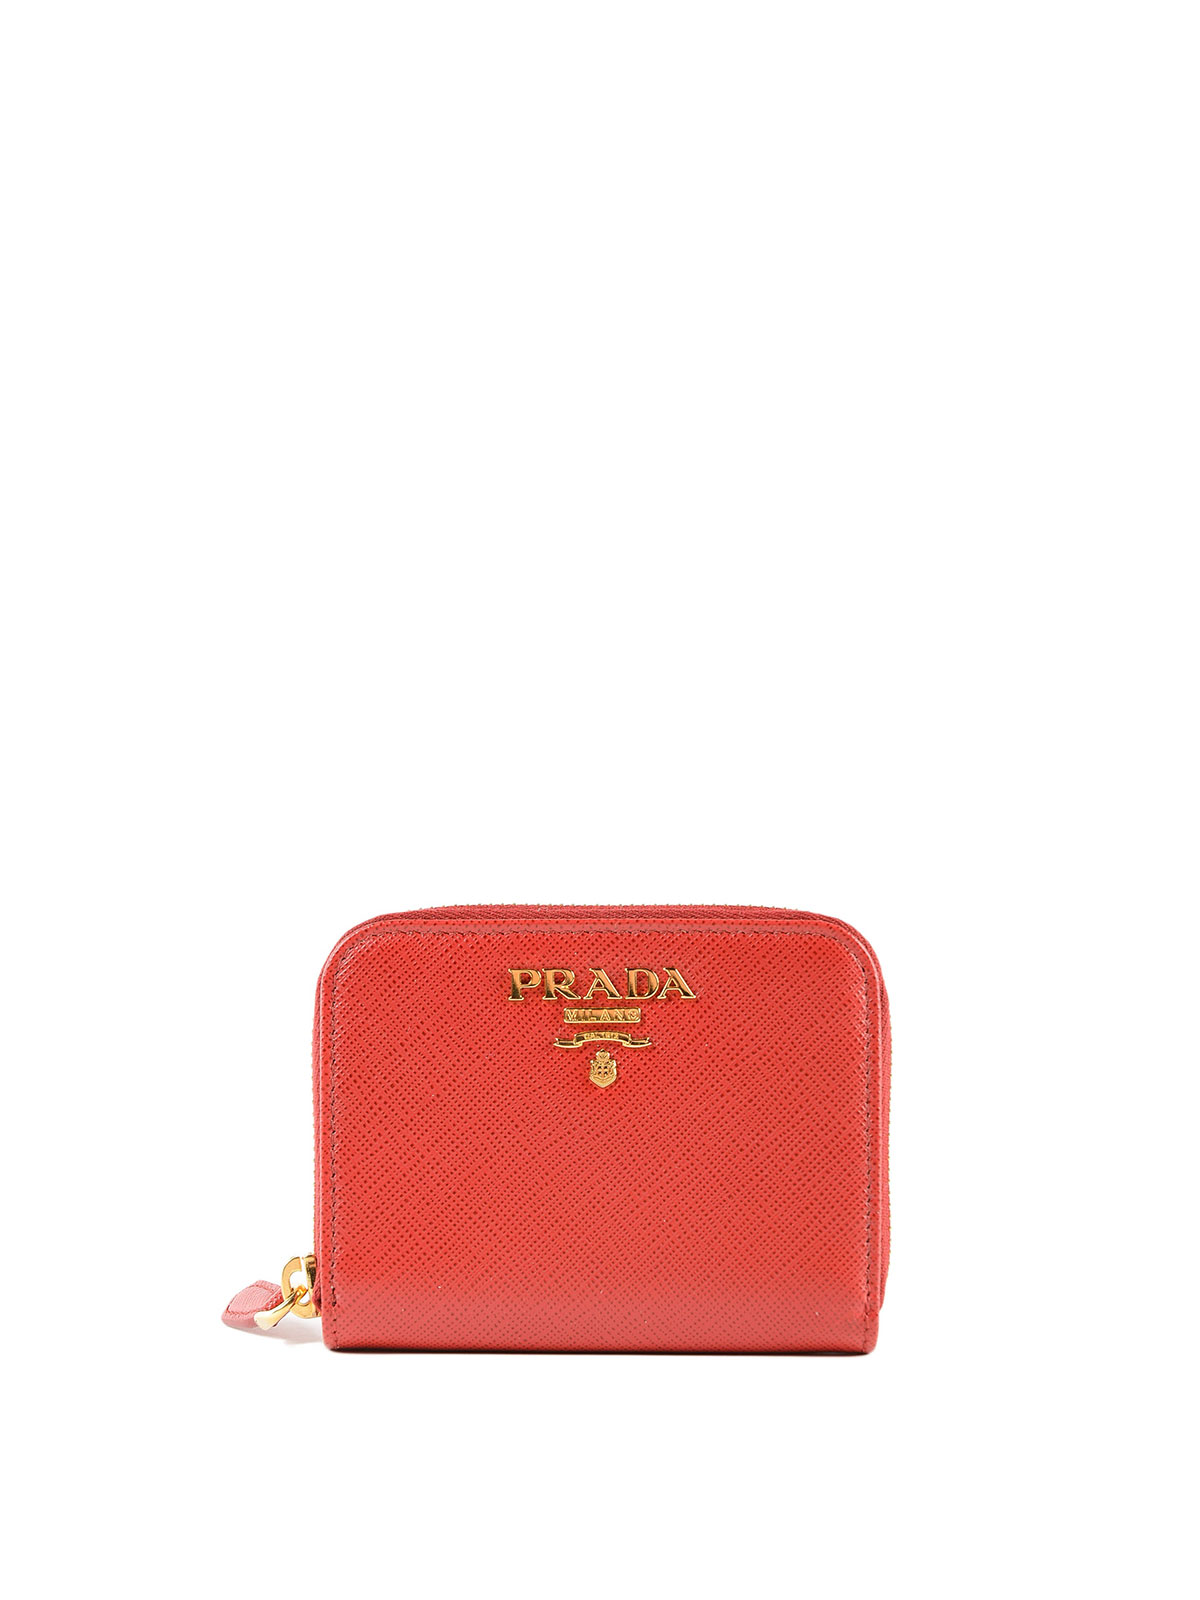 Prada - Red Saffiano leather coin purse 